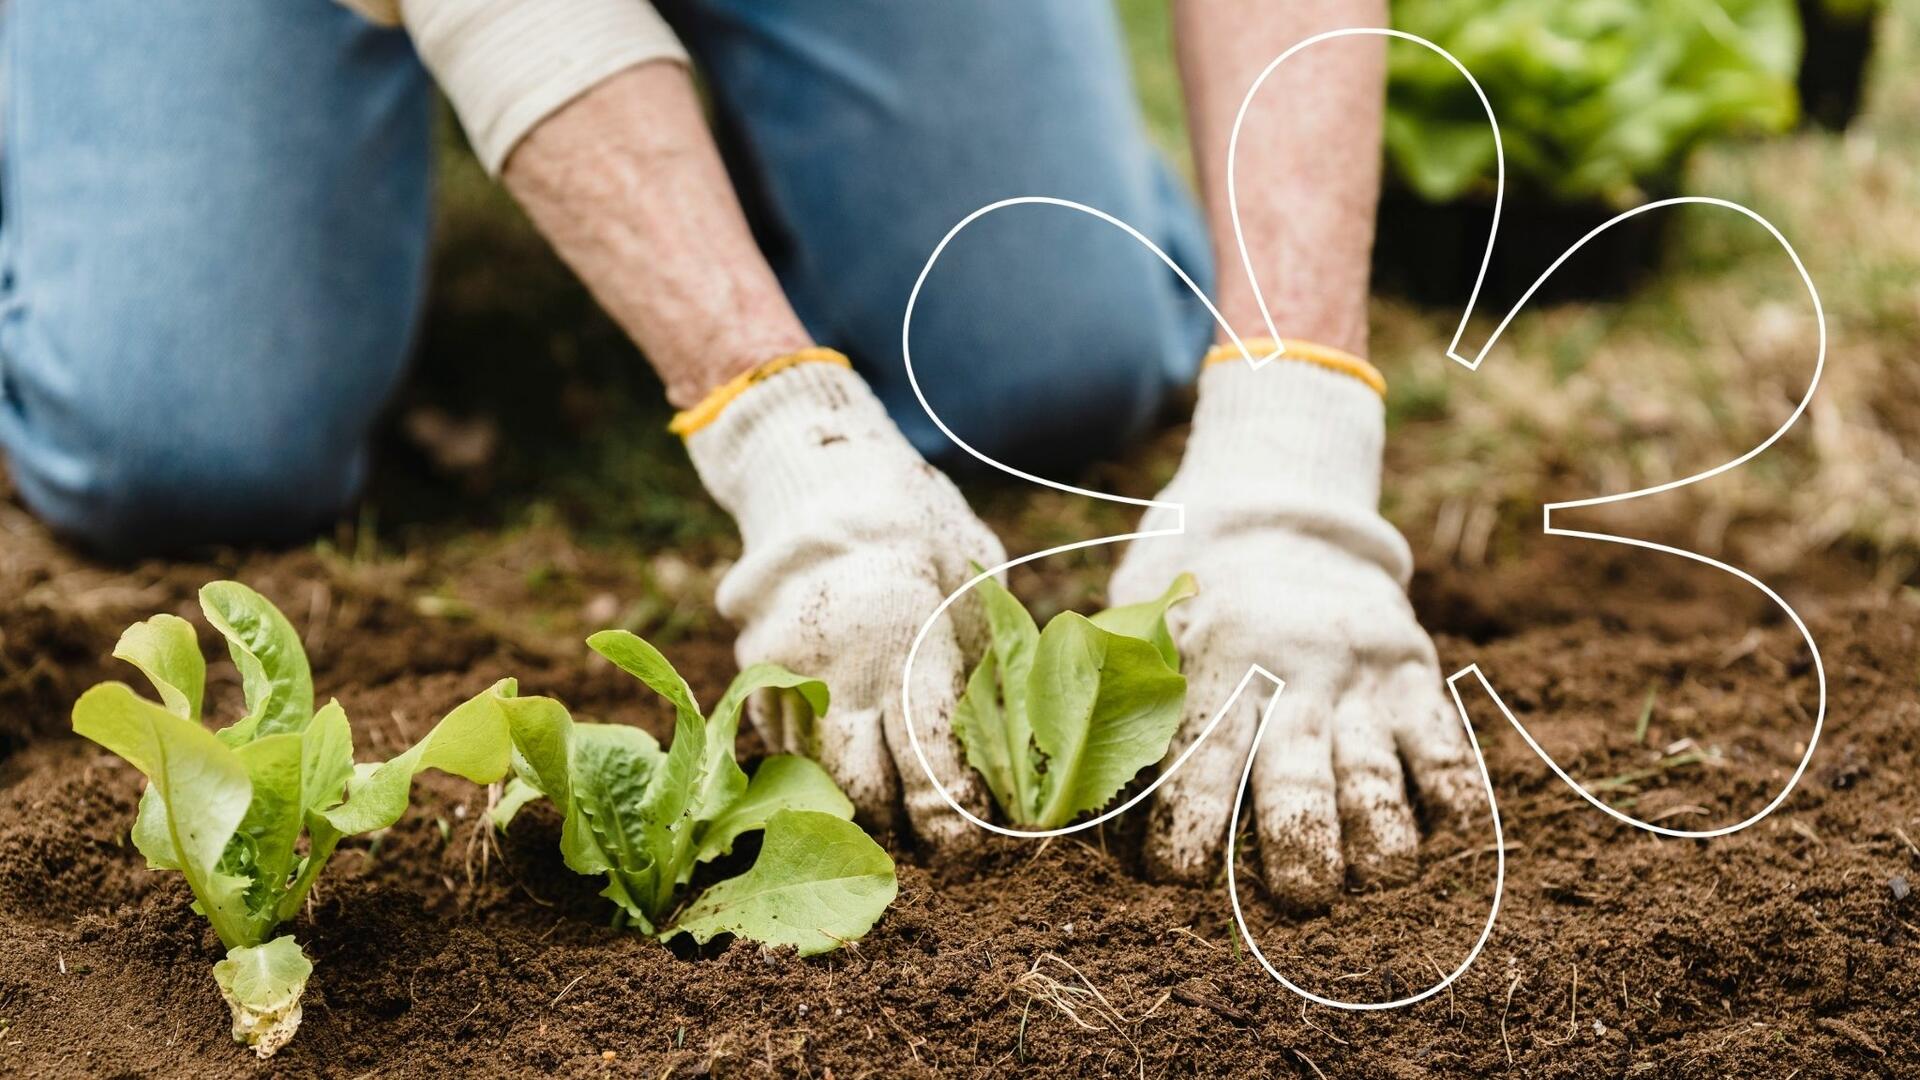 Henkilö istuttaa multaiseen maahan salaattia puutarhahanskat käsissä, kuvan päällä Onnellinen aurinko -elementti.